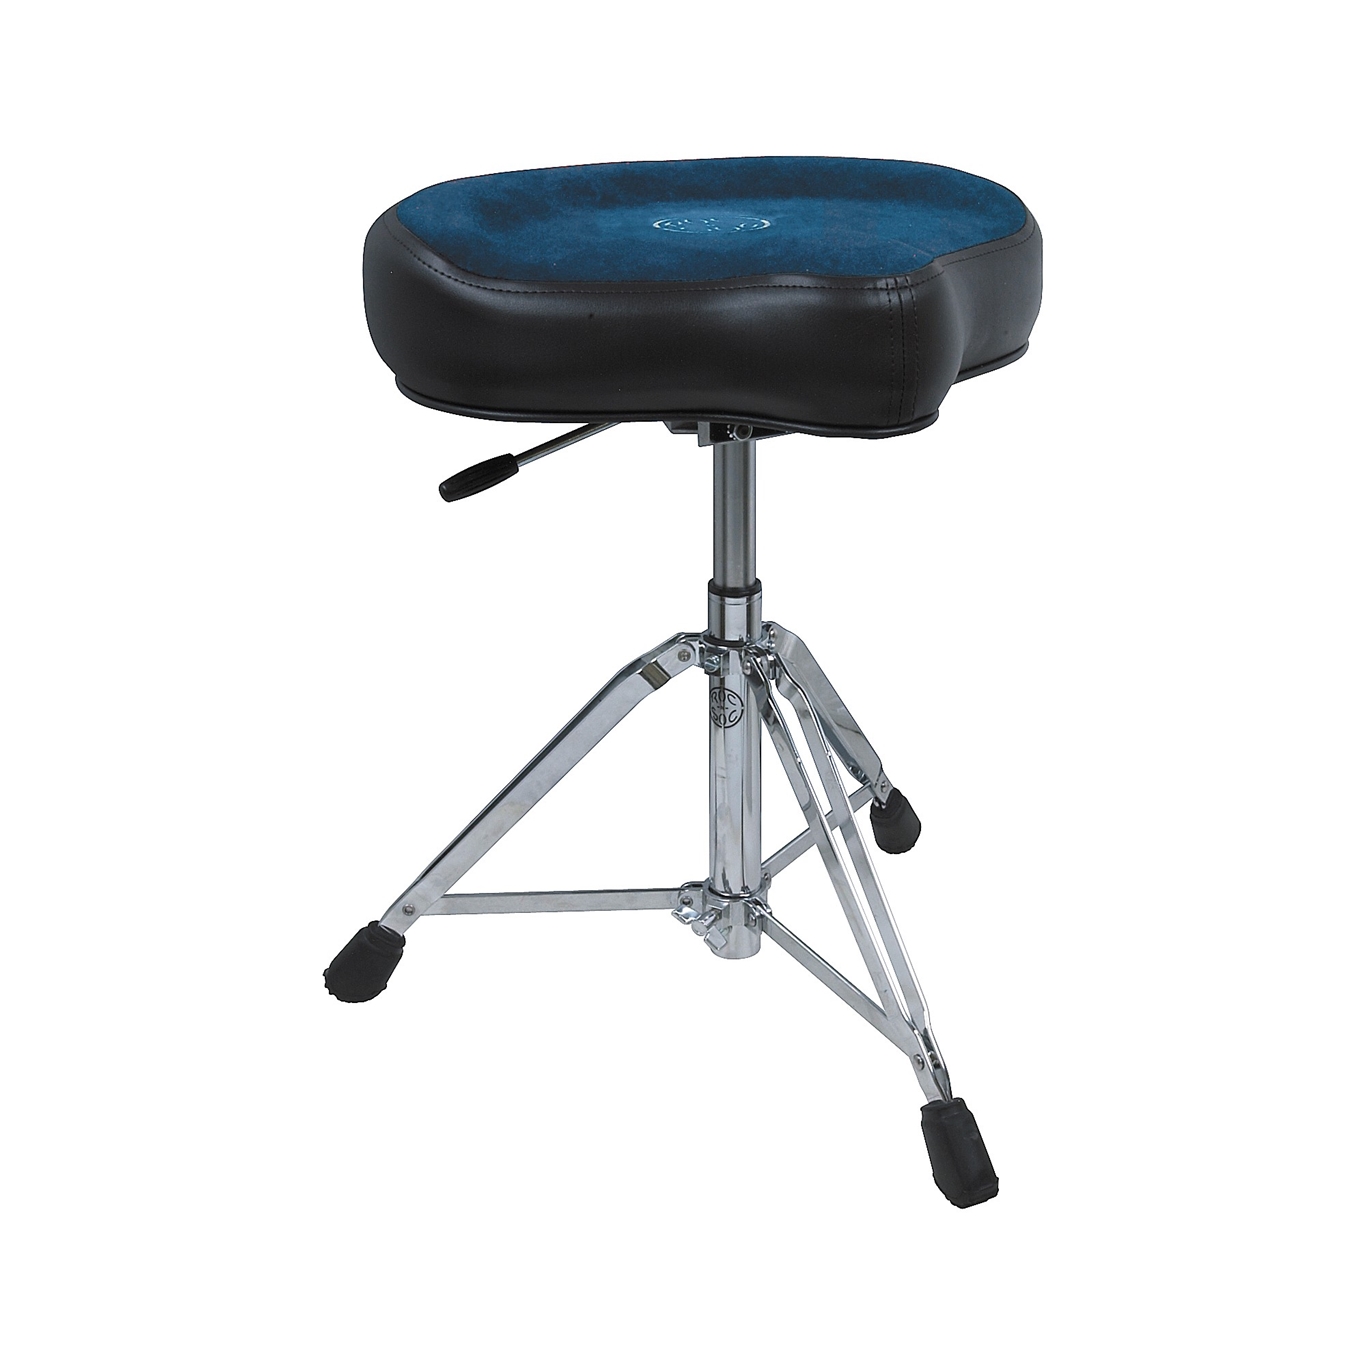 Roc N Soc Nitro Hydraulic throne - Original Blue seat